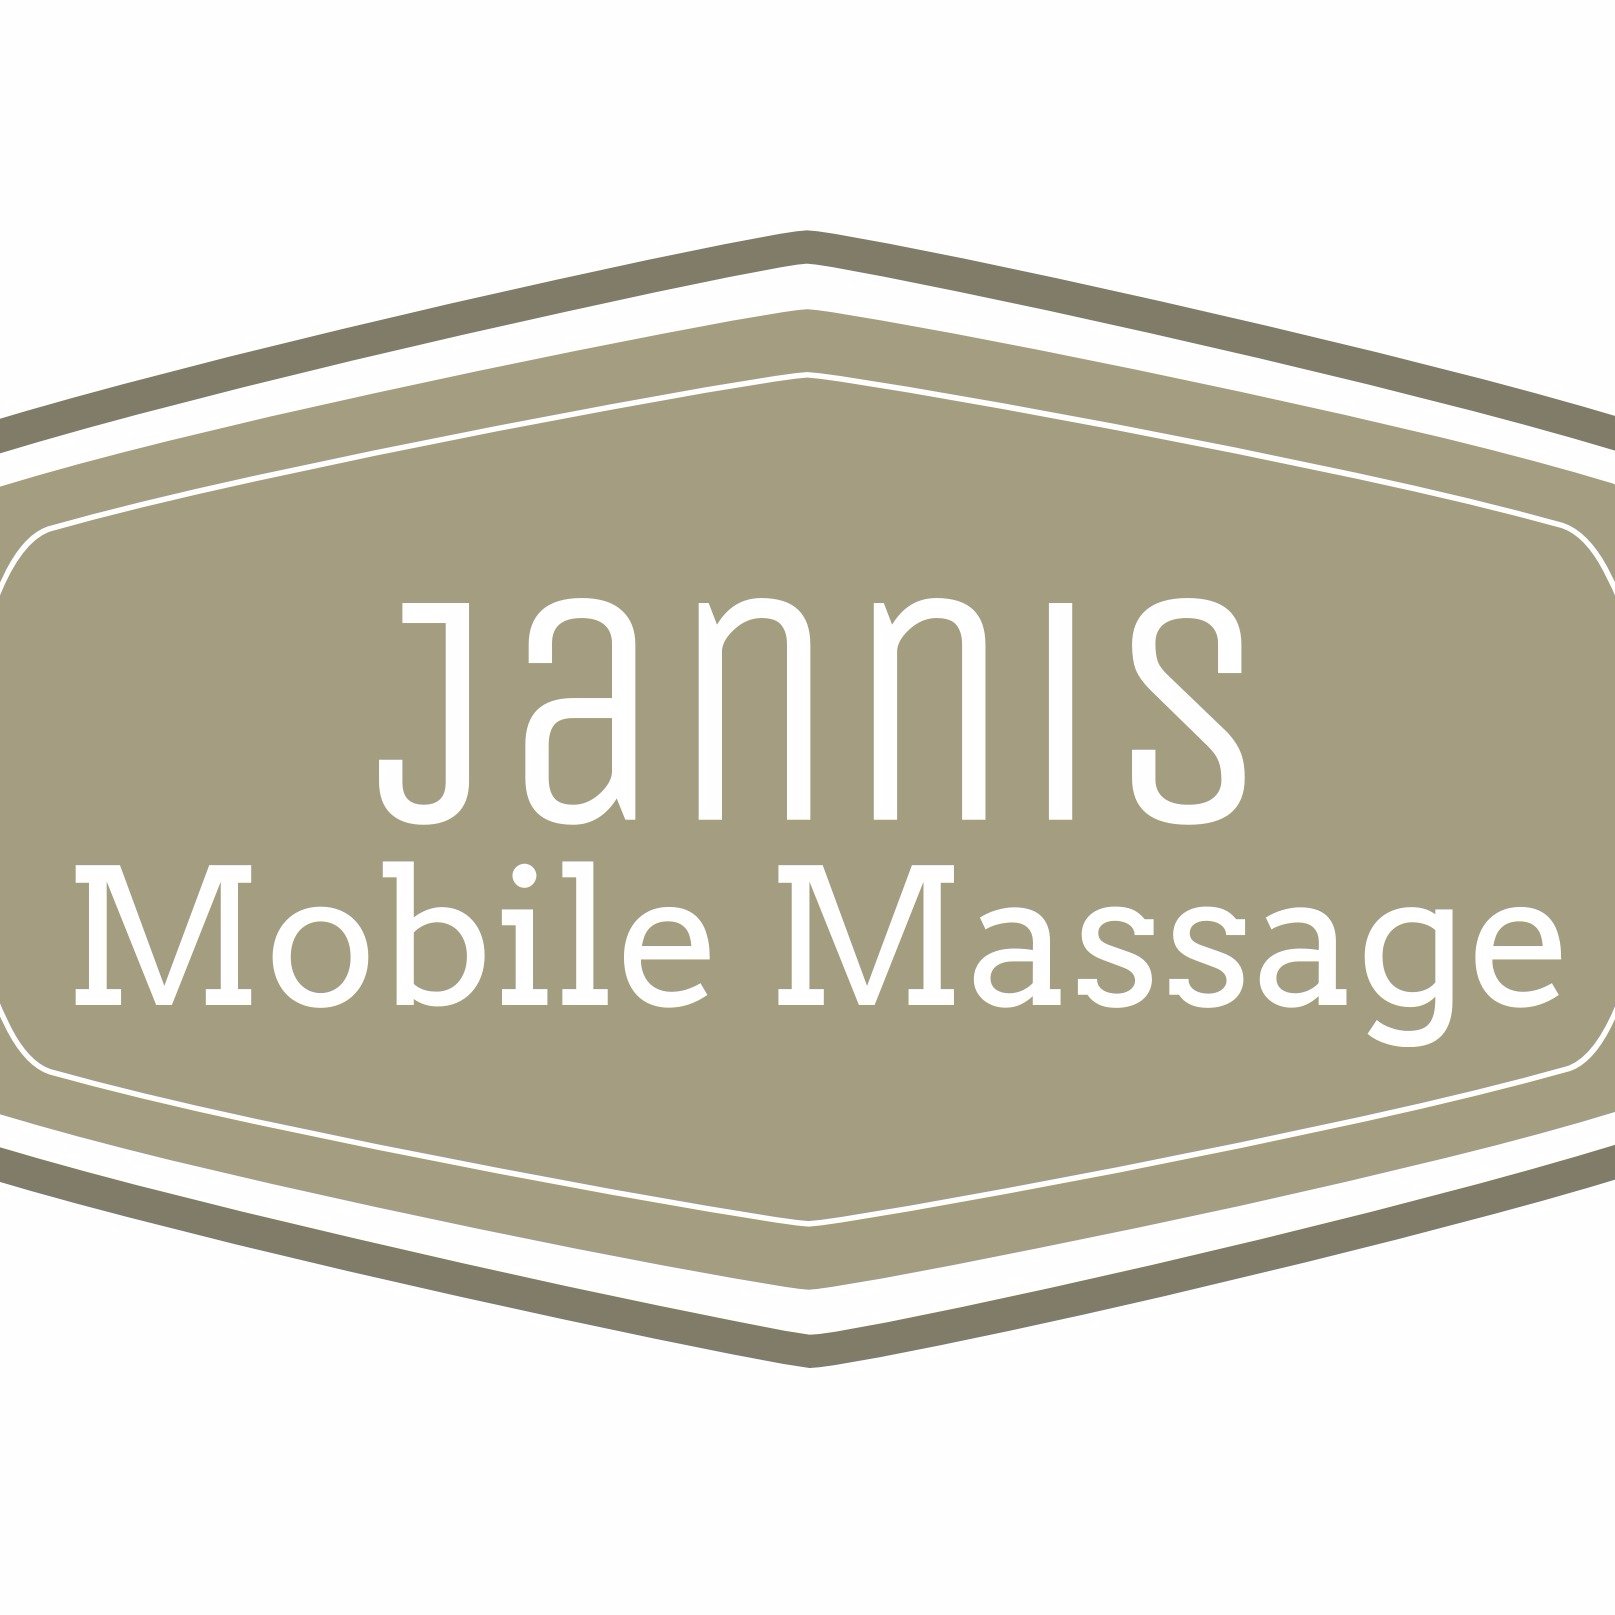 Mobile Massagen für München und Umgebung